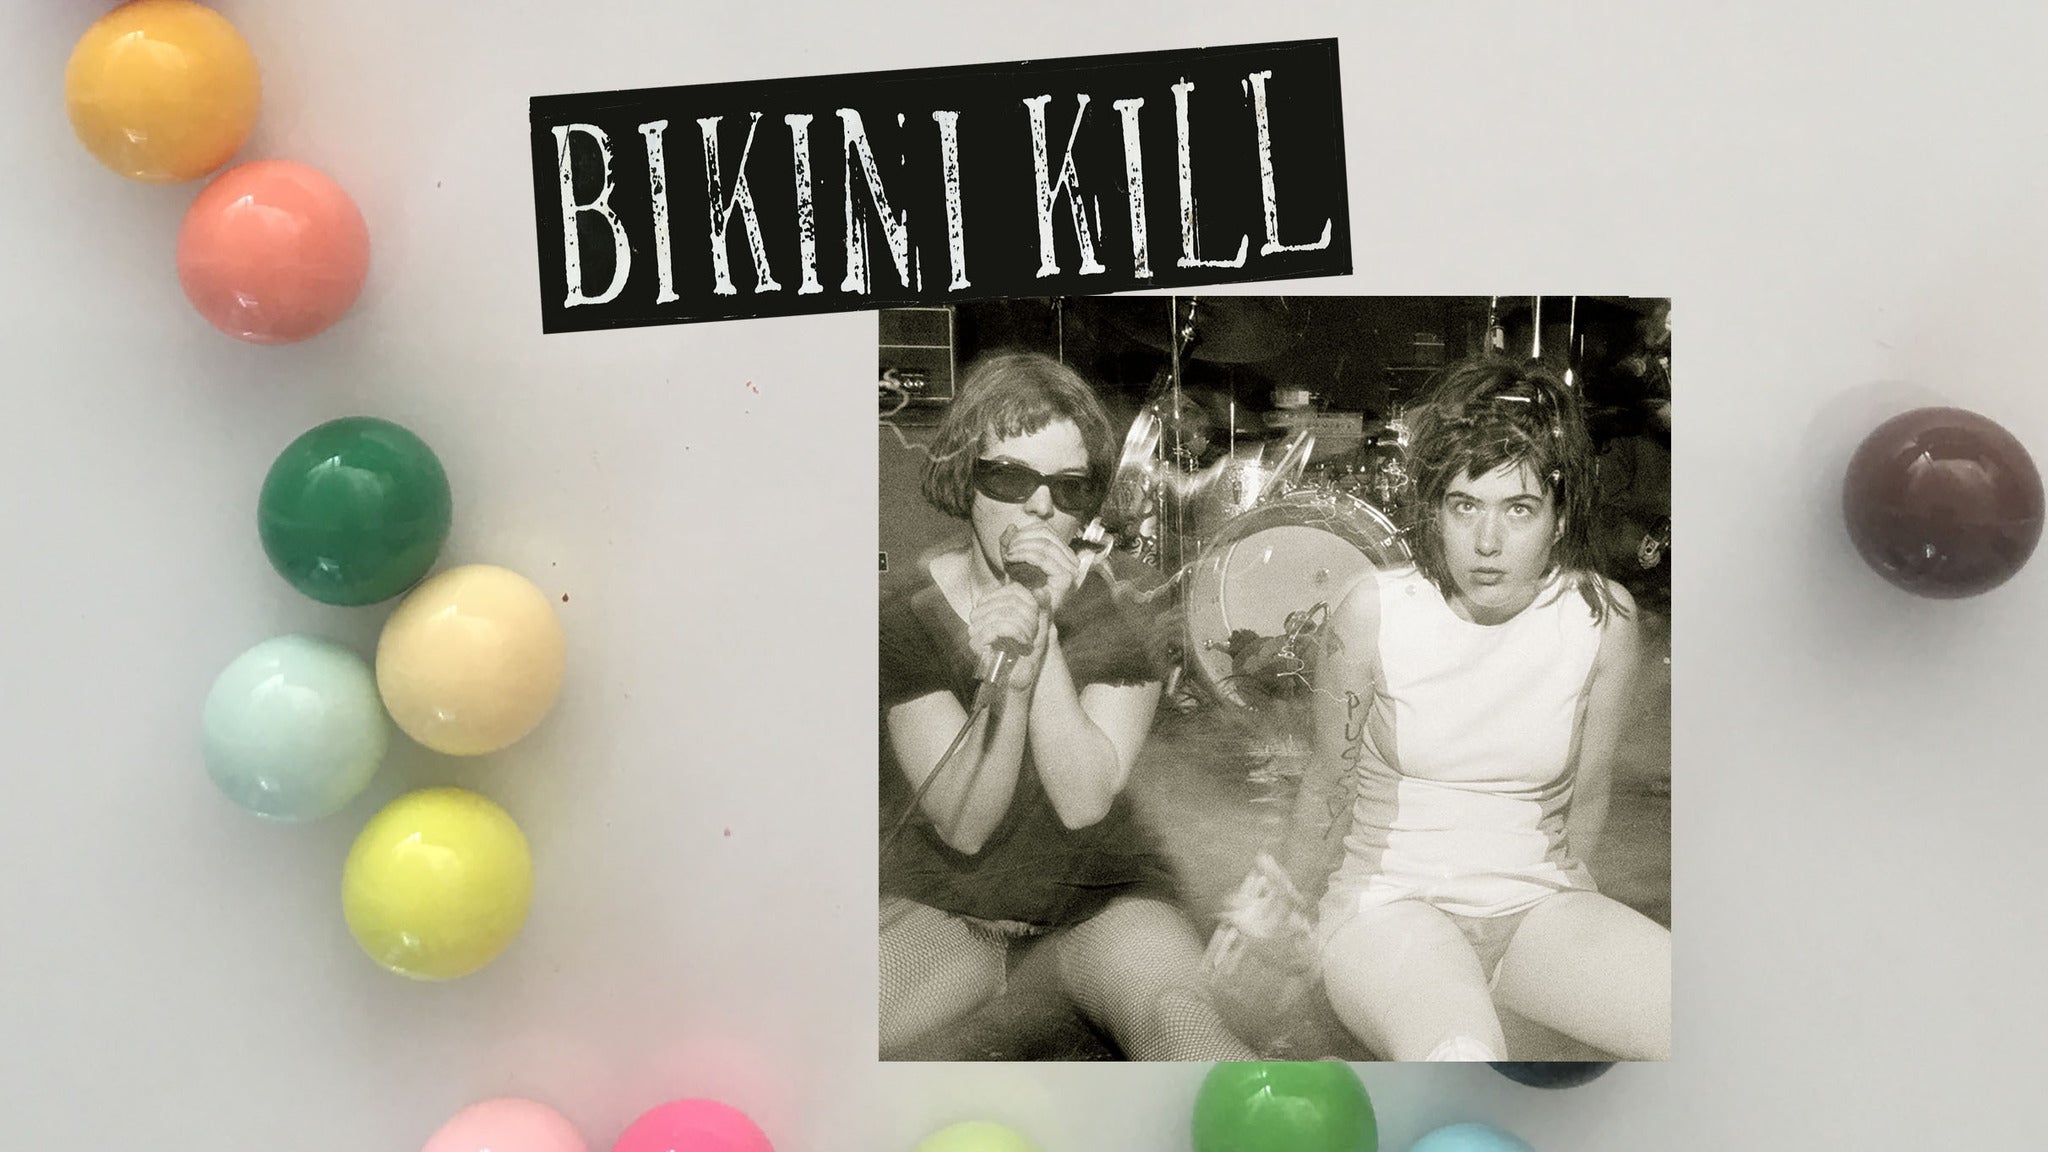 Main image for event titled Bikini Kill